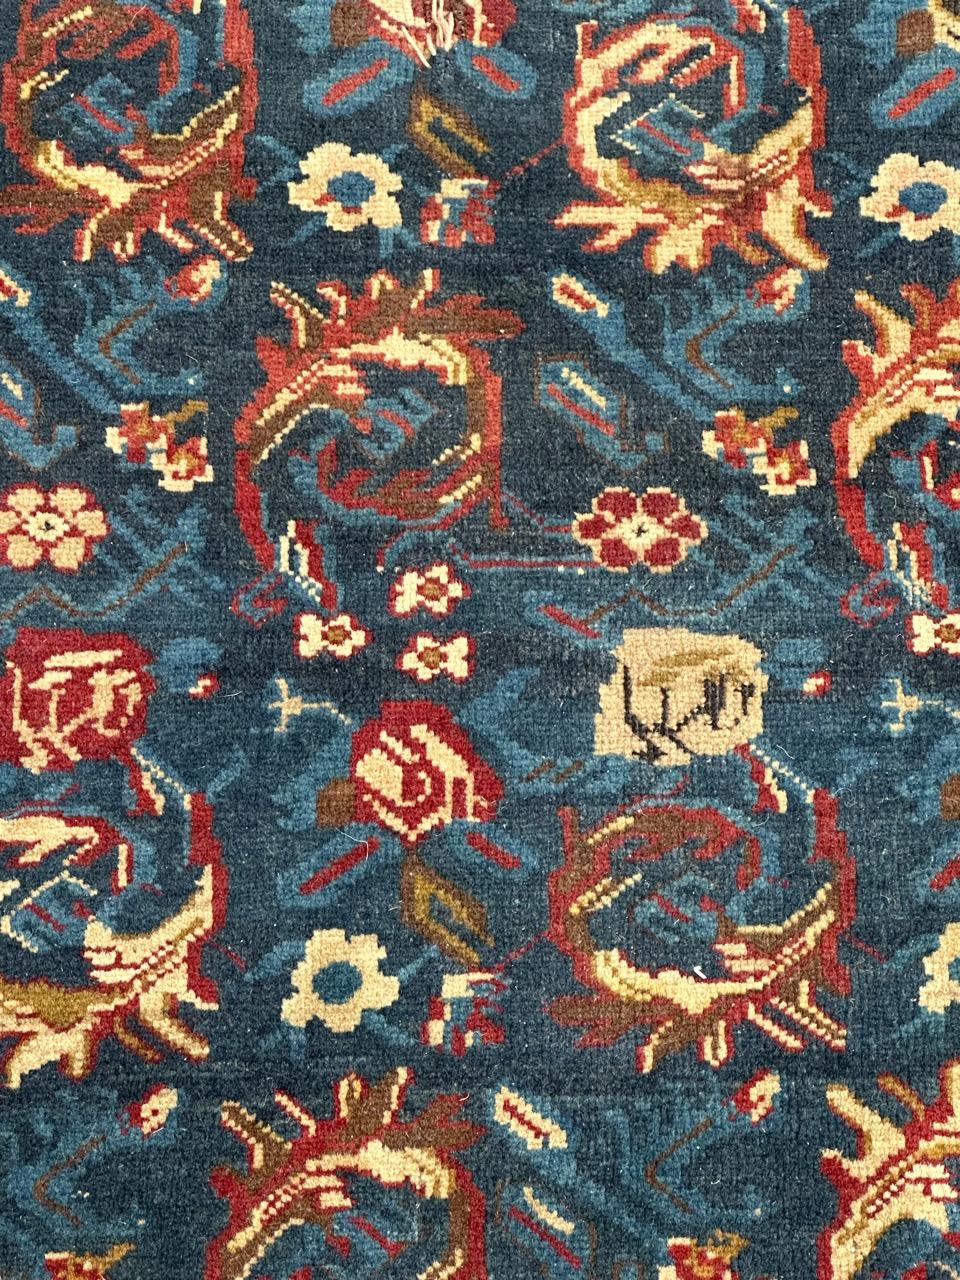 Sehr schöner armenischer Karabagh-Teppich aus dem späten 19. Jahrhundert mit schönem und seltenem stilisiertem Blumenmuster und schönen natürlichen Farben mit einem blauen Marinefeld, Rot, Weiß und Gold, vollständig und fein handgeknüpft mit